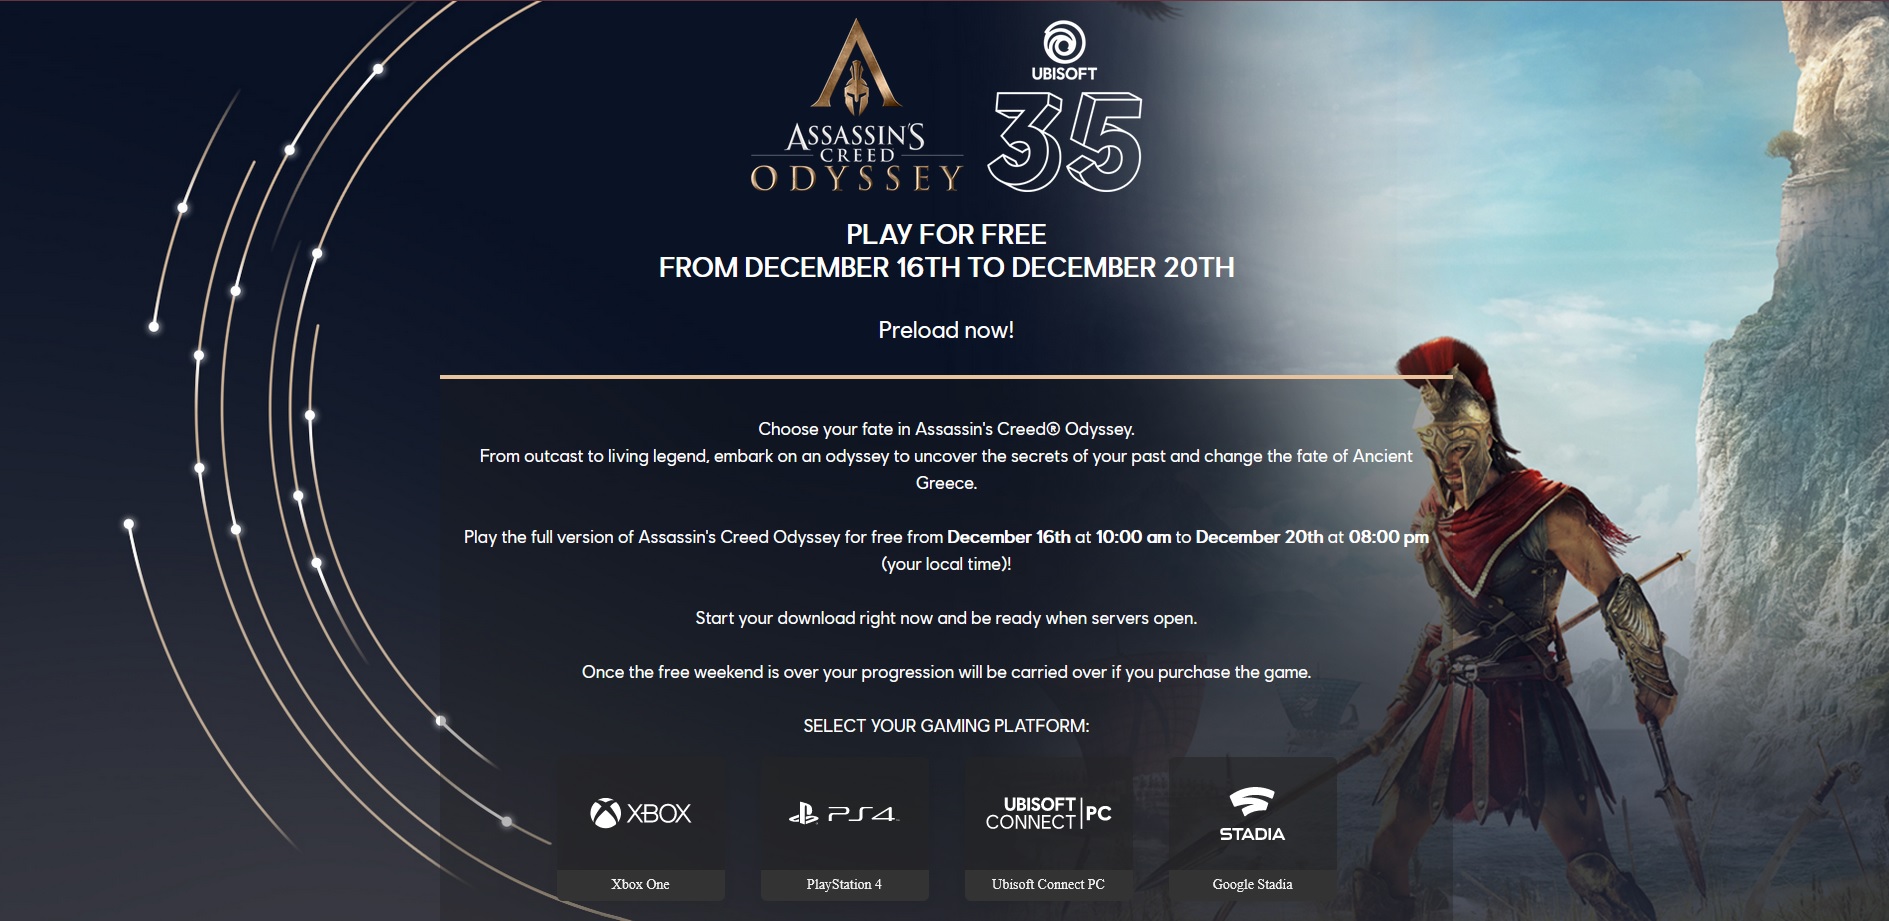 Vyzkoušejte si zdarma Assassin's Creed Odyssey free